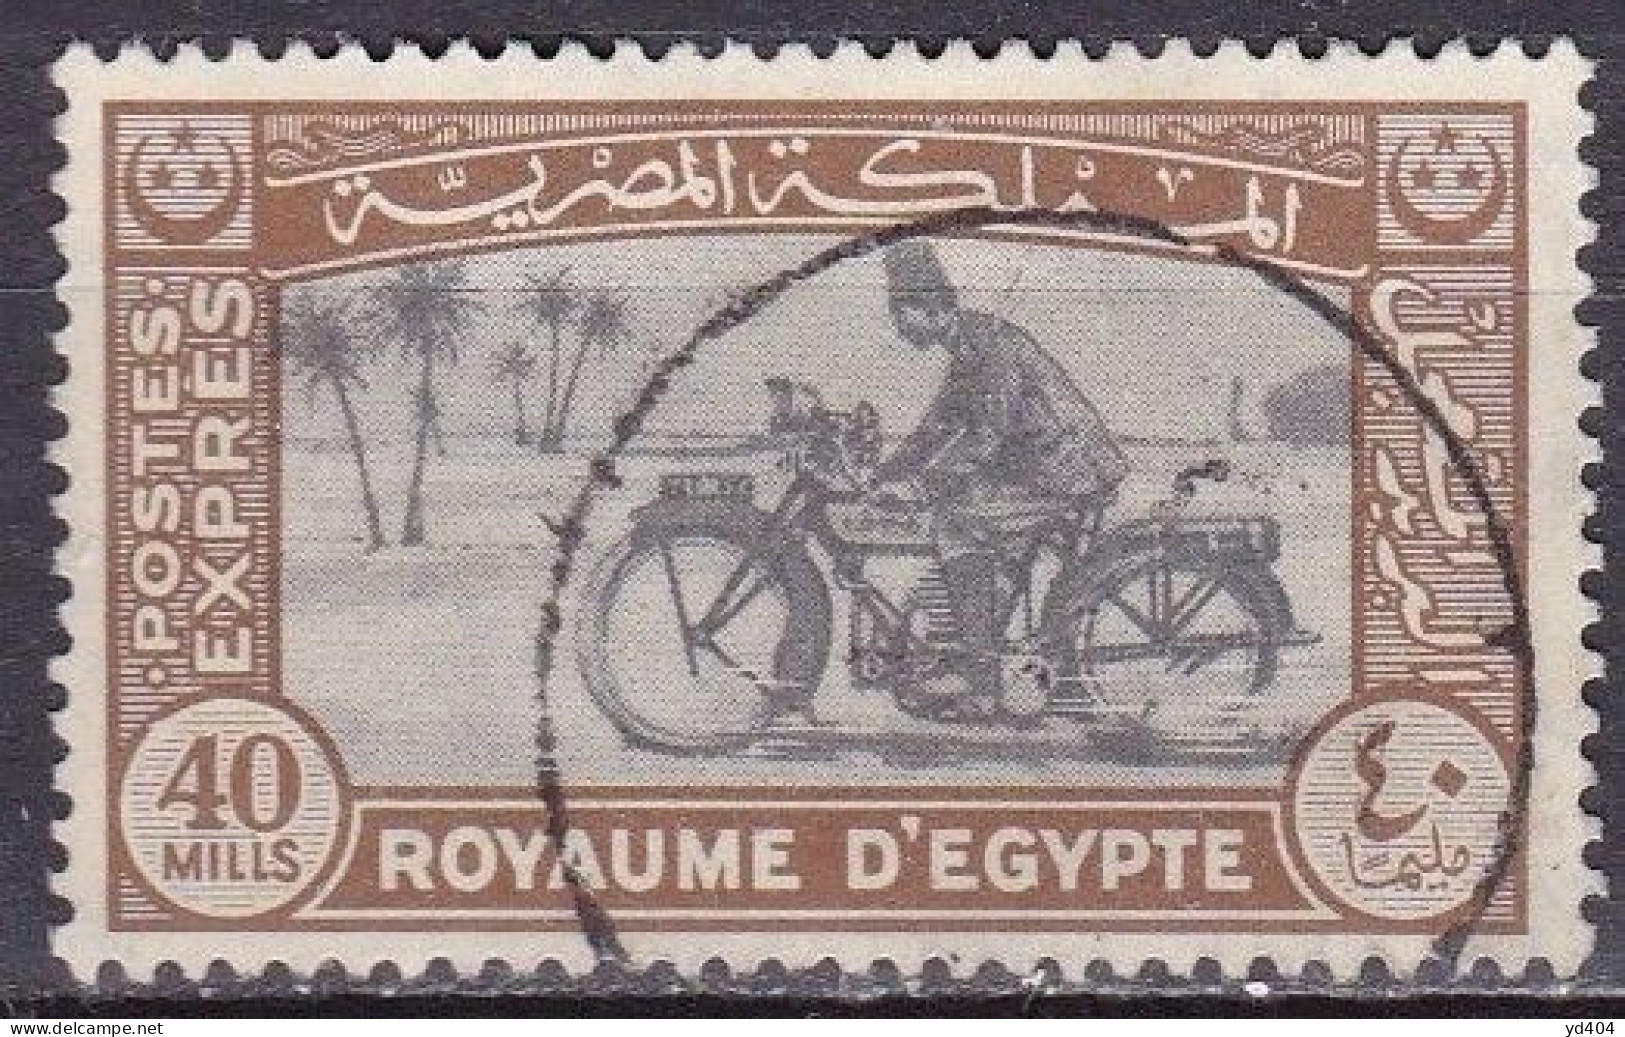 EG903 – EGYPTE – EGYPT – EXPRESS – 1943-44 – MOTORCYCLE POSTMAN – Y&T # 4 USED 6 € - Gebruikt